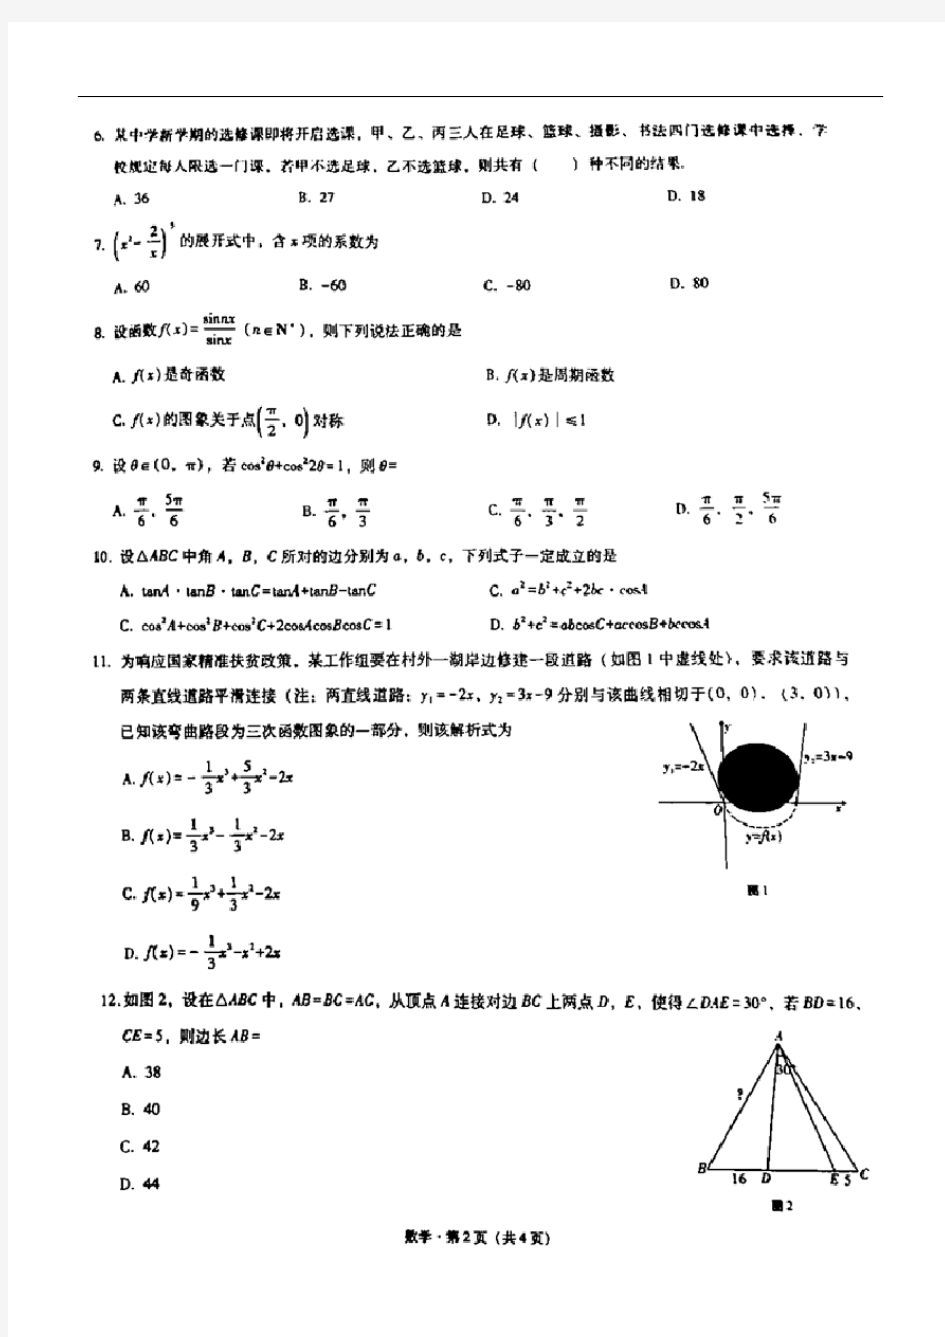 重庆巴蜀中学2021届高三高考适应性月考卷(二)数学试题(含答案和解析)(2020.09)